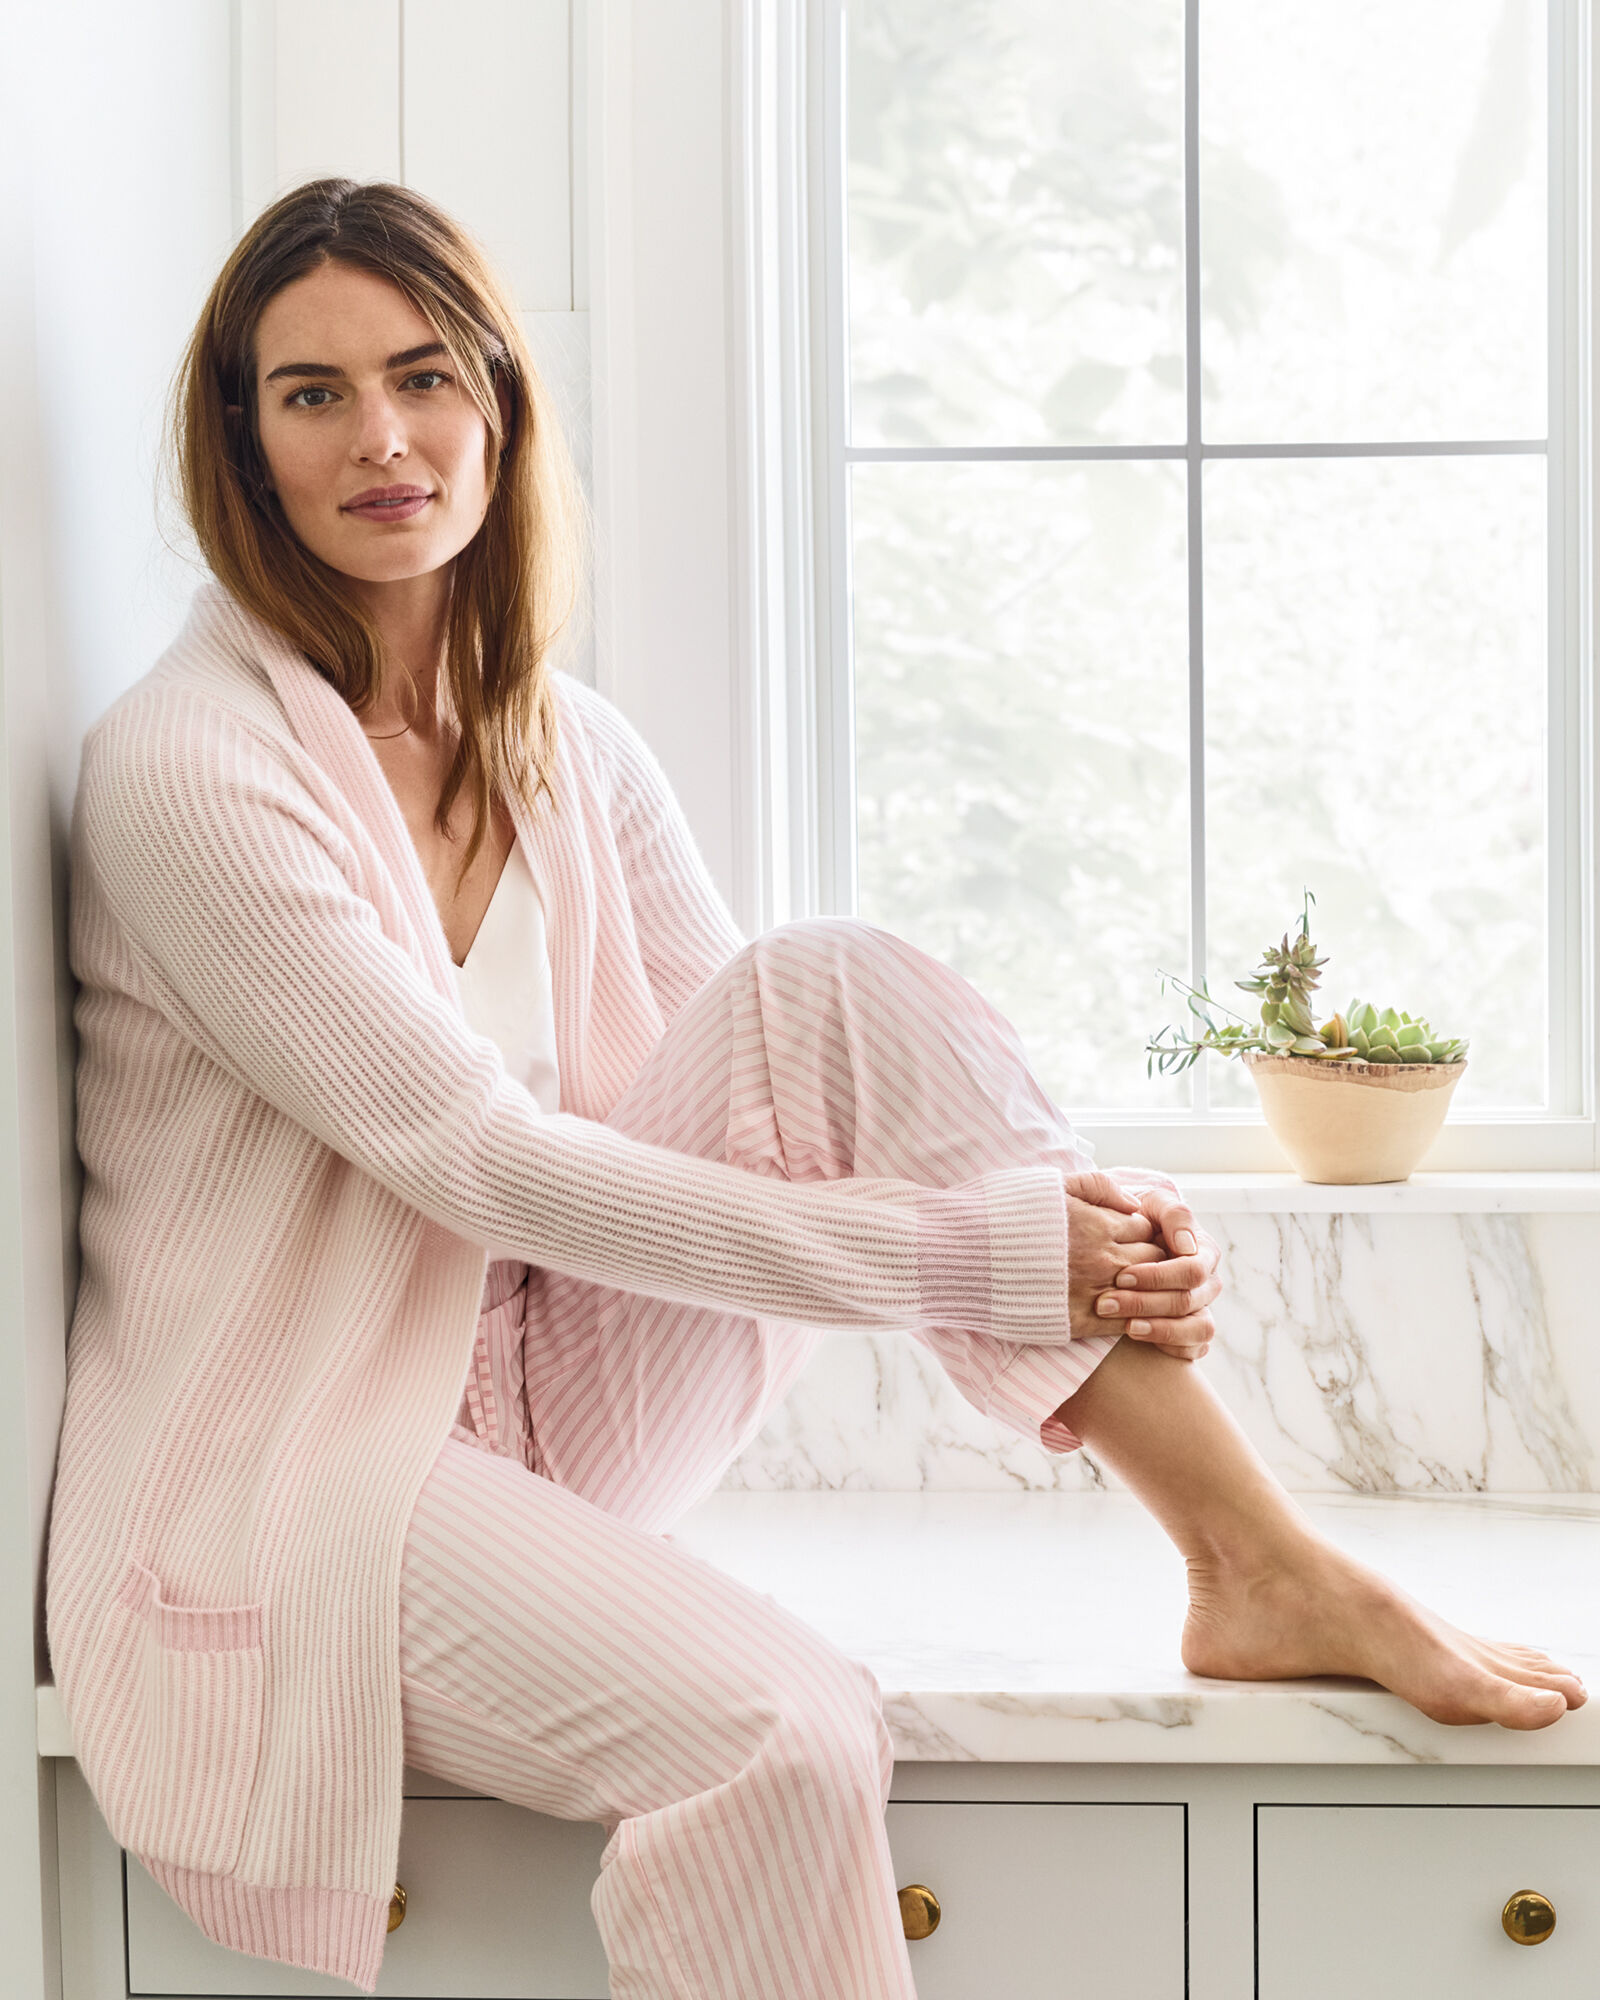 Organic sleep pants and pajamas for women: Comfortable and cozy